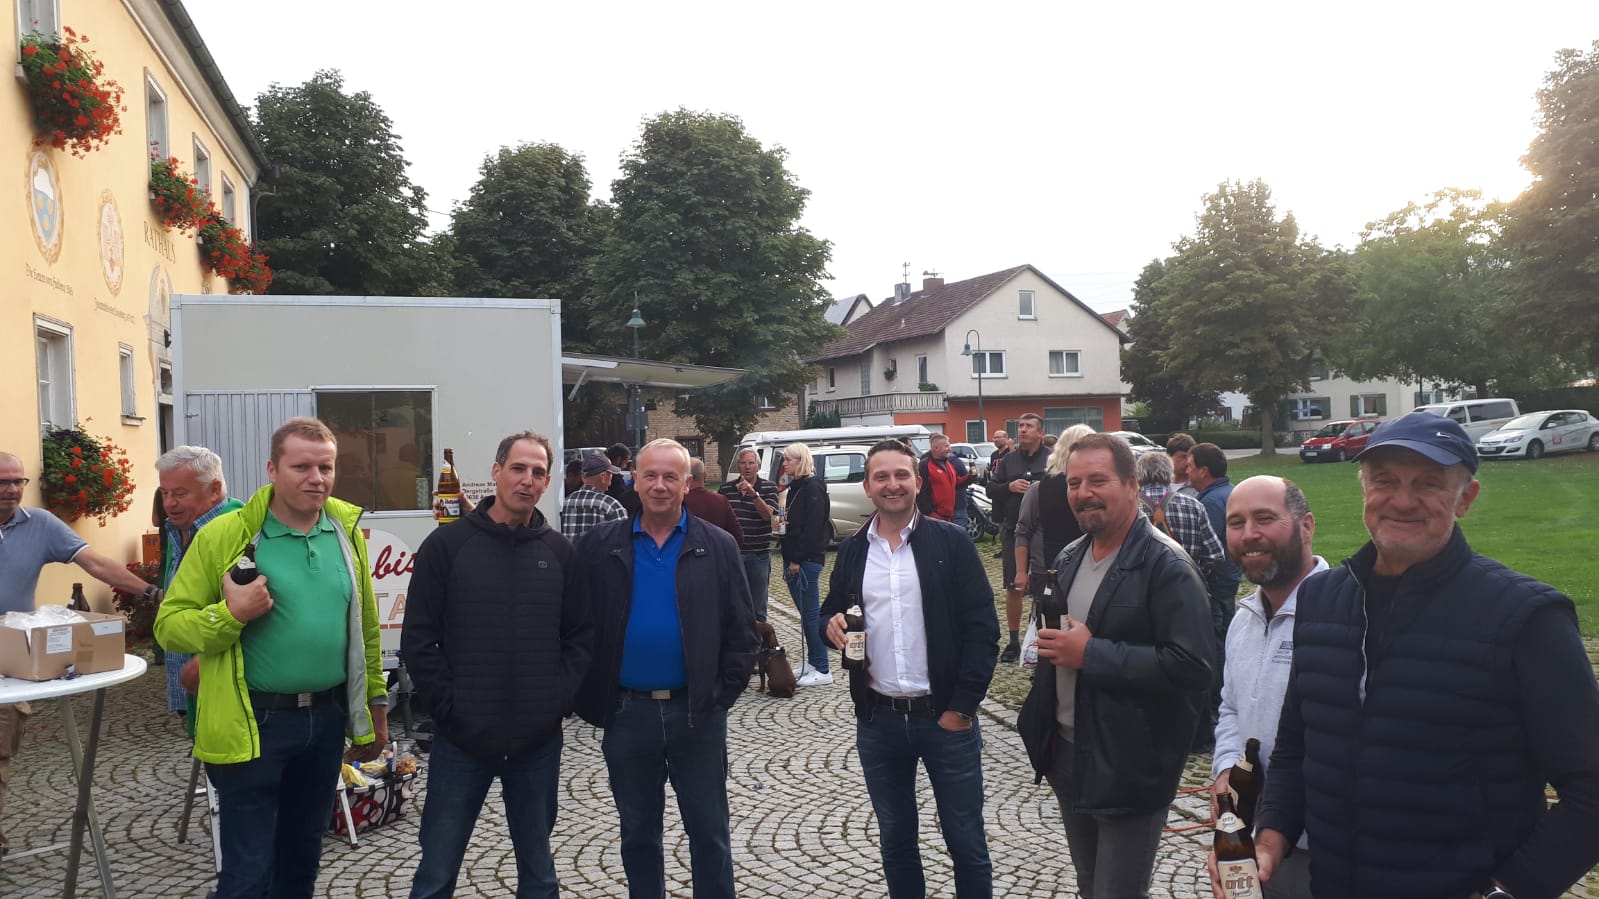 15.91.2021 - CDU Infostand auf dem Wochenmarkt in Aach-Linz - 